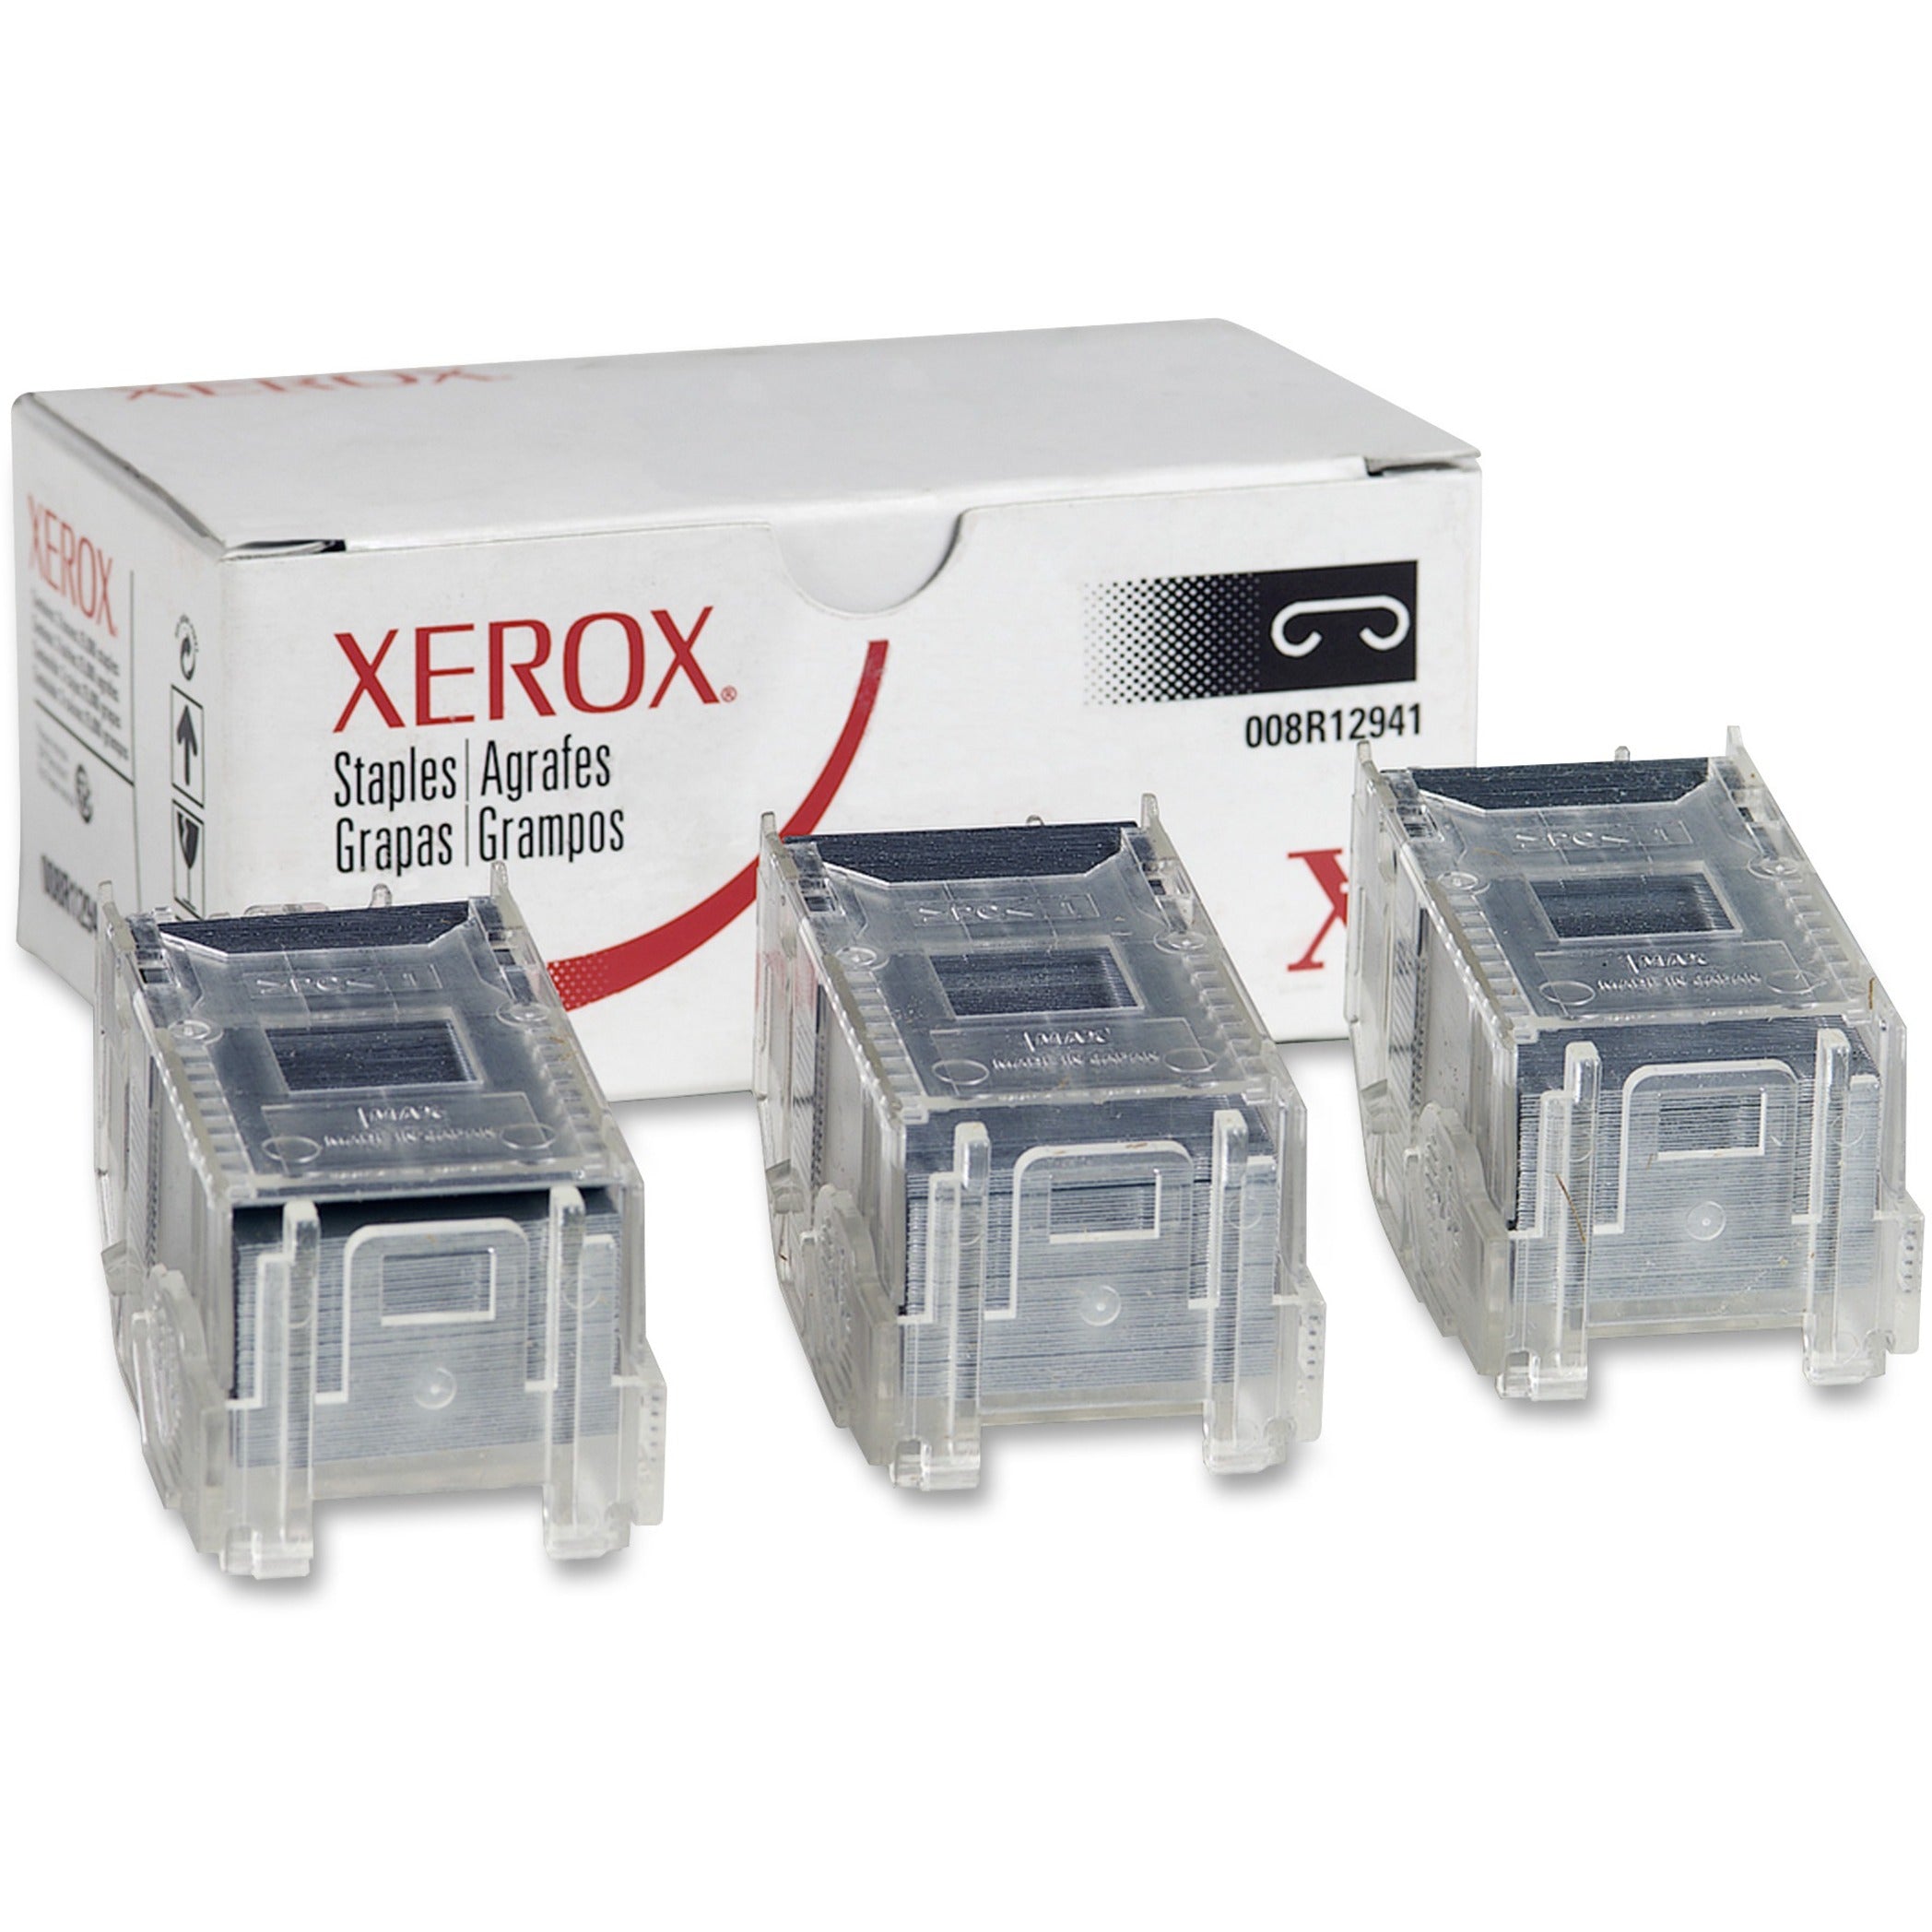 Xerox 008R12941 Office Finisher Main Staple Cartridge Refills